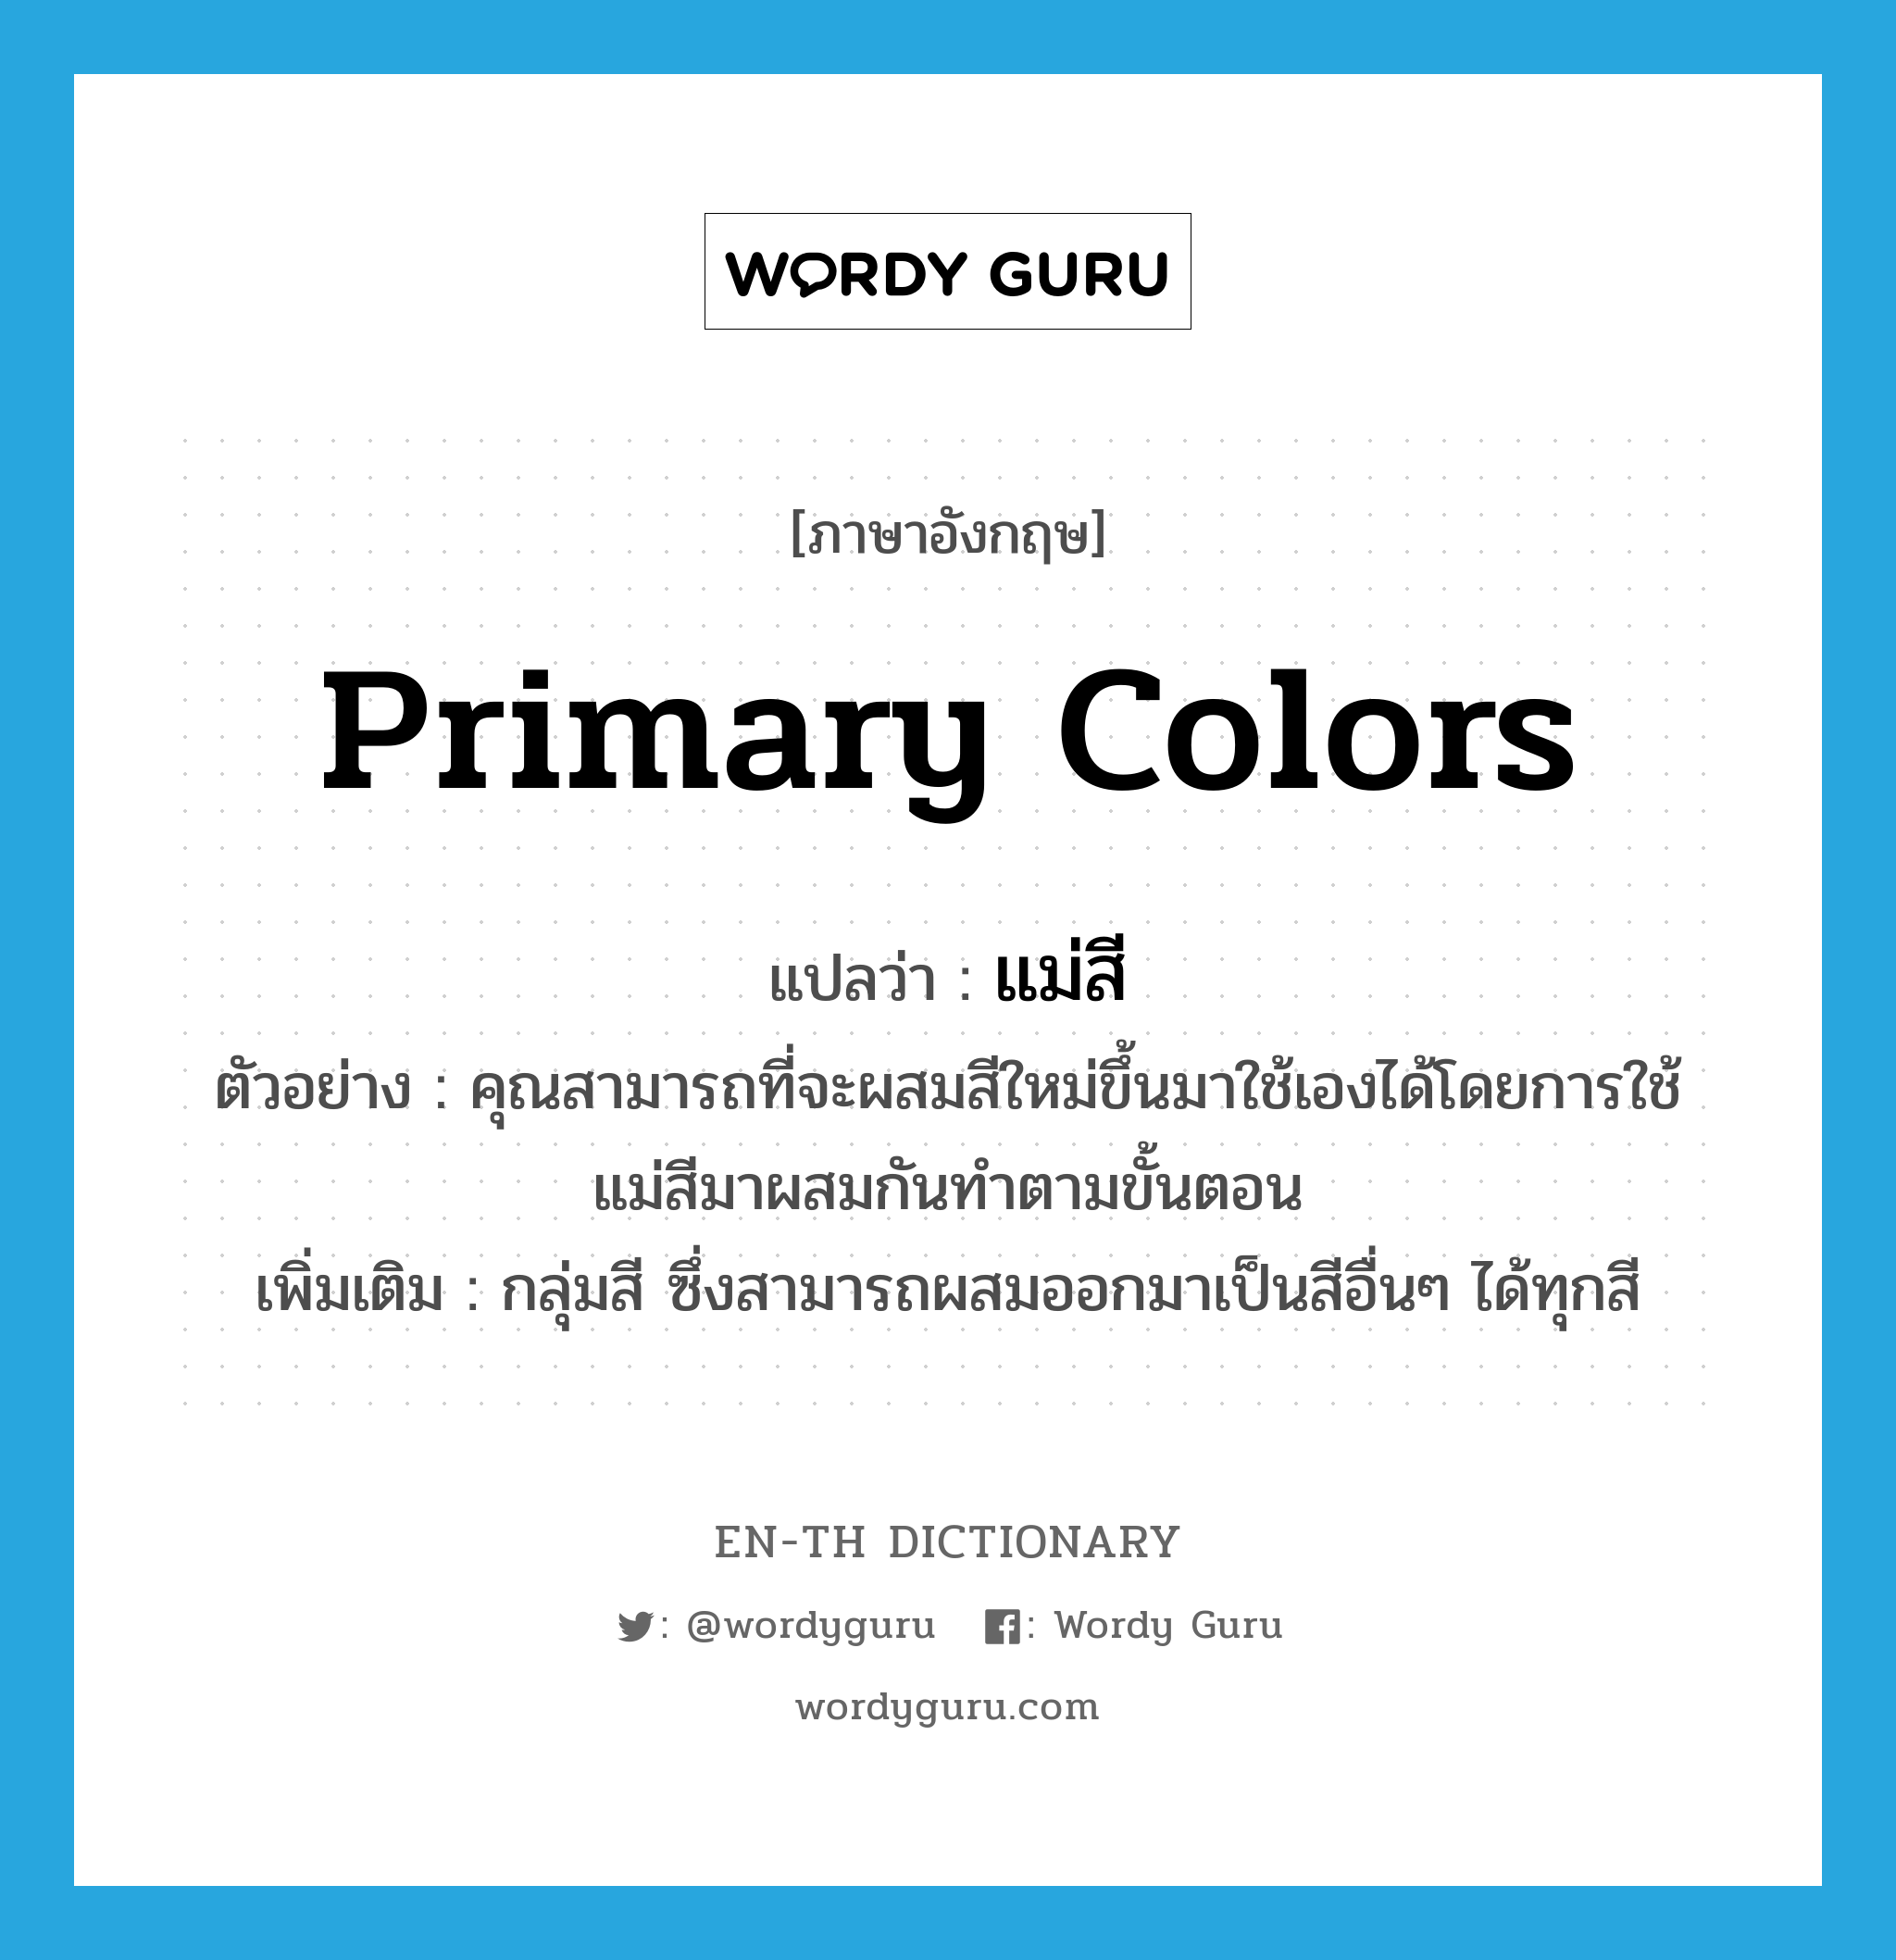 primary colors แปลว่า?, คำศัพท์ภาษาอังกฤษ primary colors แปลว่า แม่สี ประเภท N ตัวอย่าง คุณสามารถที่จะผสมสีใหม่ขึ้นมาใช้เองได้โดยการใช้แม่สีมาผสมกันทำตามขั้นตอน เพิ่มเติม กลุ่มสี ซึ่งสามารถผสมออกมาเป็นสีอื่นๆ ได้ทุกสี หมวด N